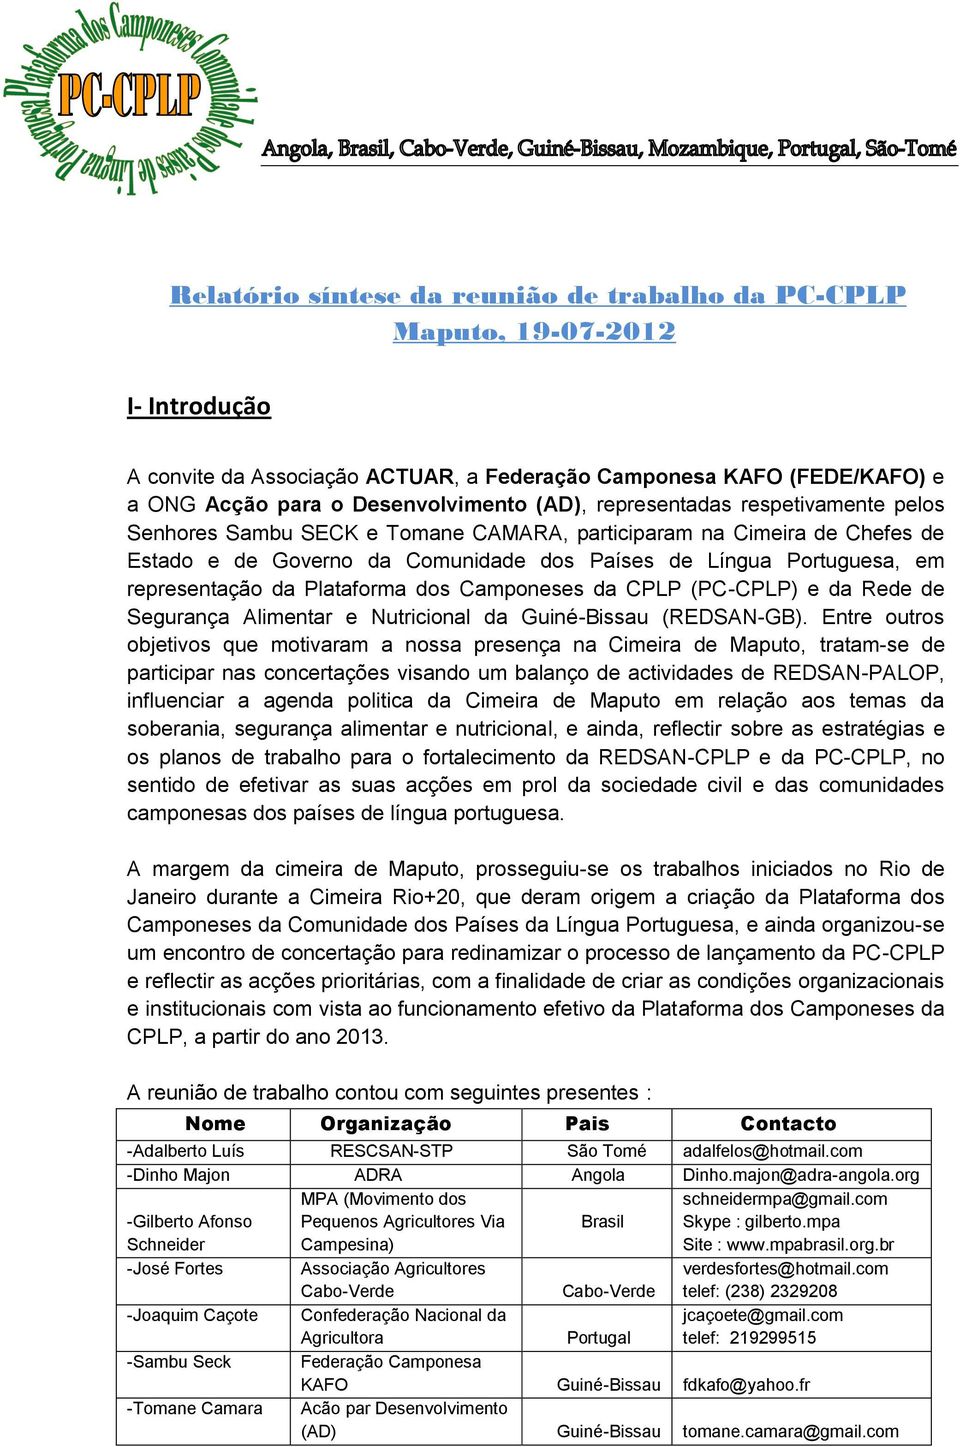 Plataforma dos Camponeses da CPLP (PC-CPLP) e da Rede de Segurança Alimentar e Nutricional da Guiné-Bissau (REDSAN-GB).